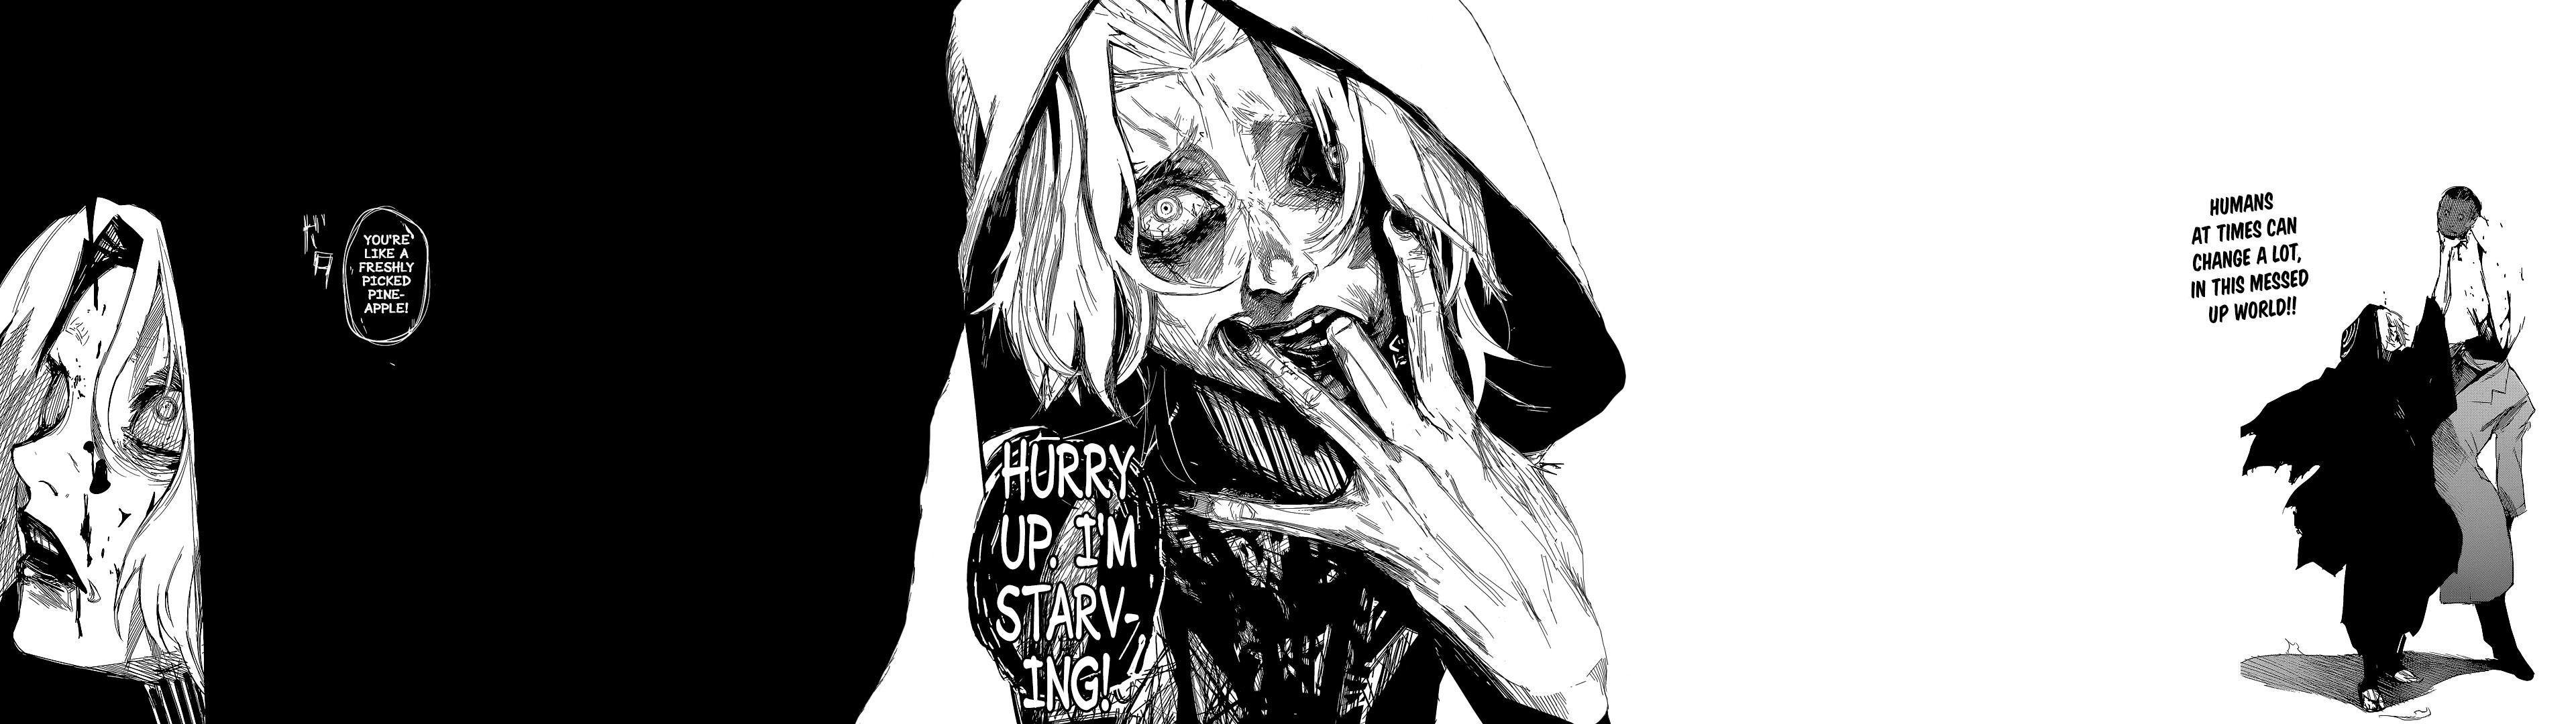 fond d'écran manga tokyo ghoul,noir et blanc,illustration,dessin,art,bouche